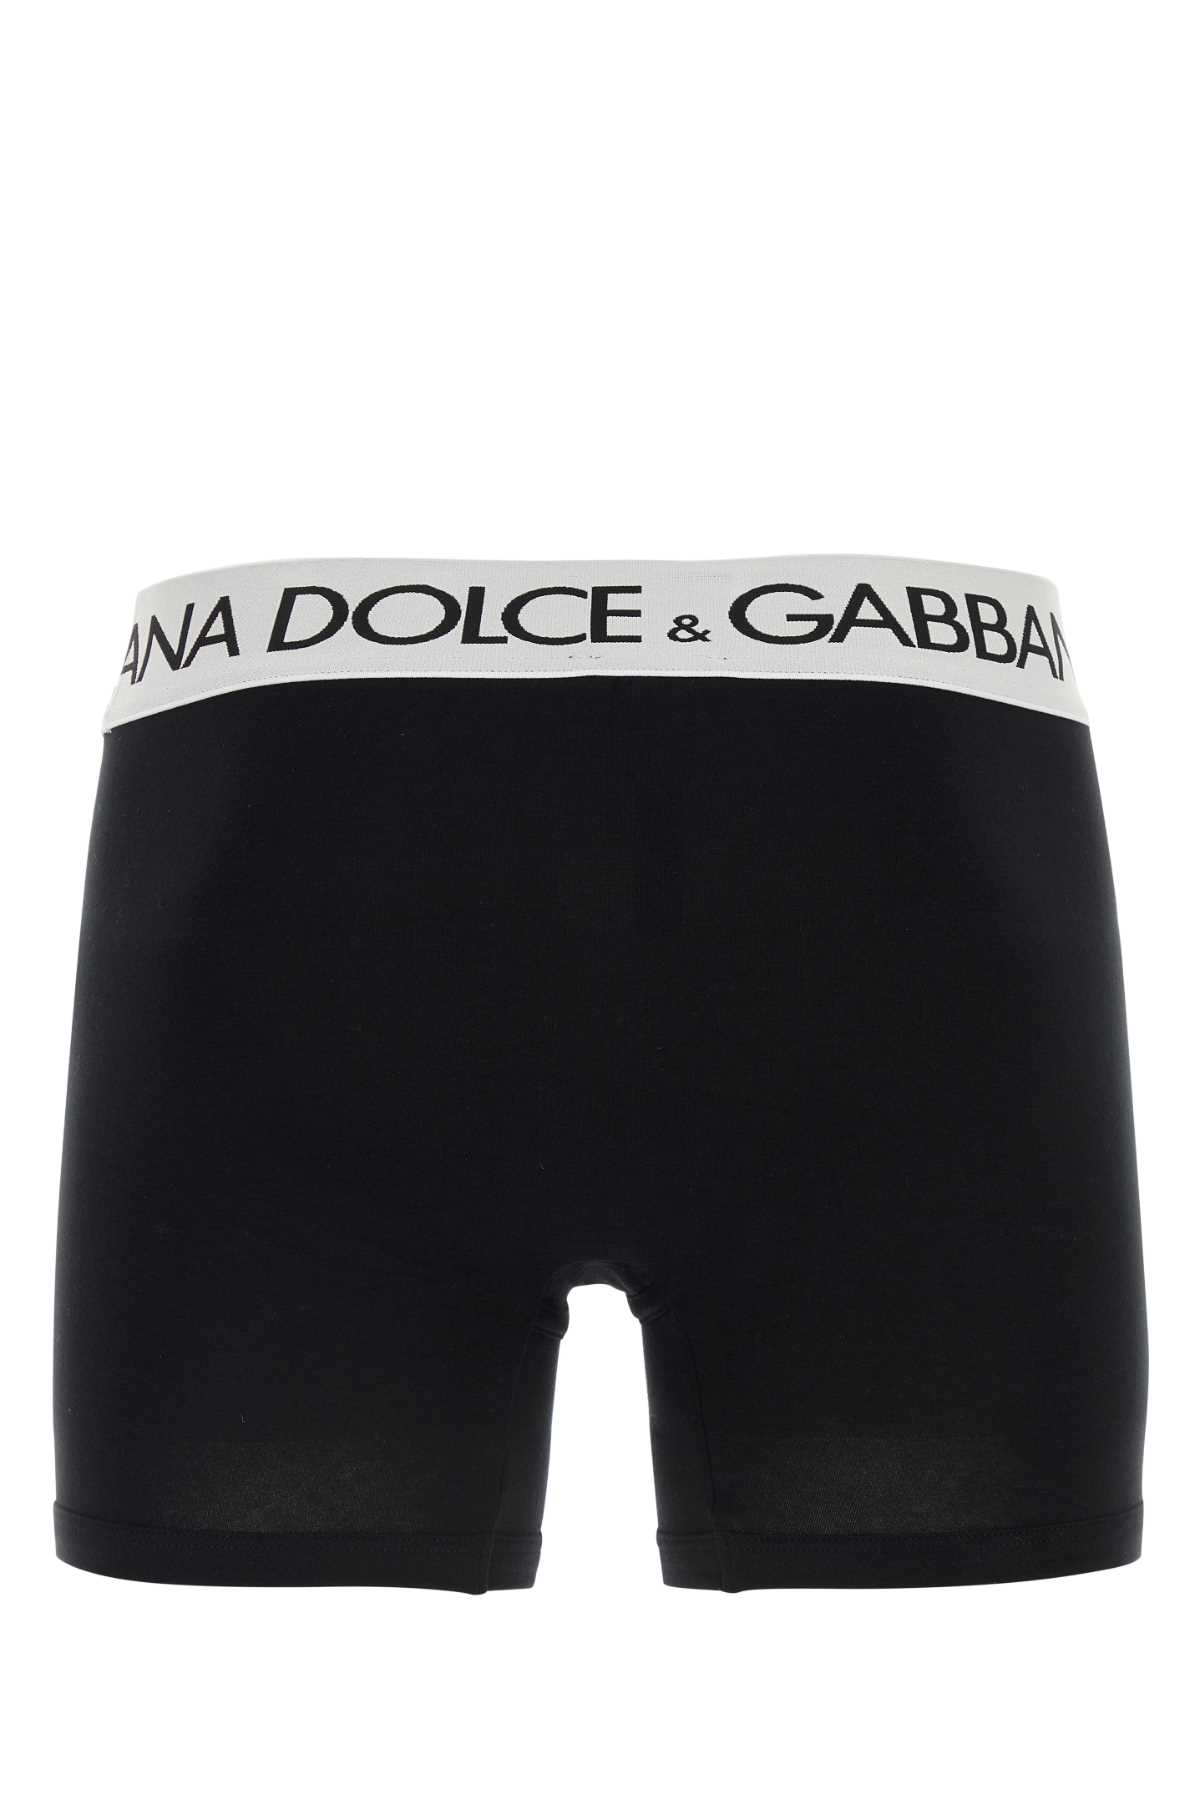 Dolce & Gabbana Black Stretch Cotton Boxer In Nero